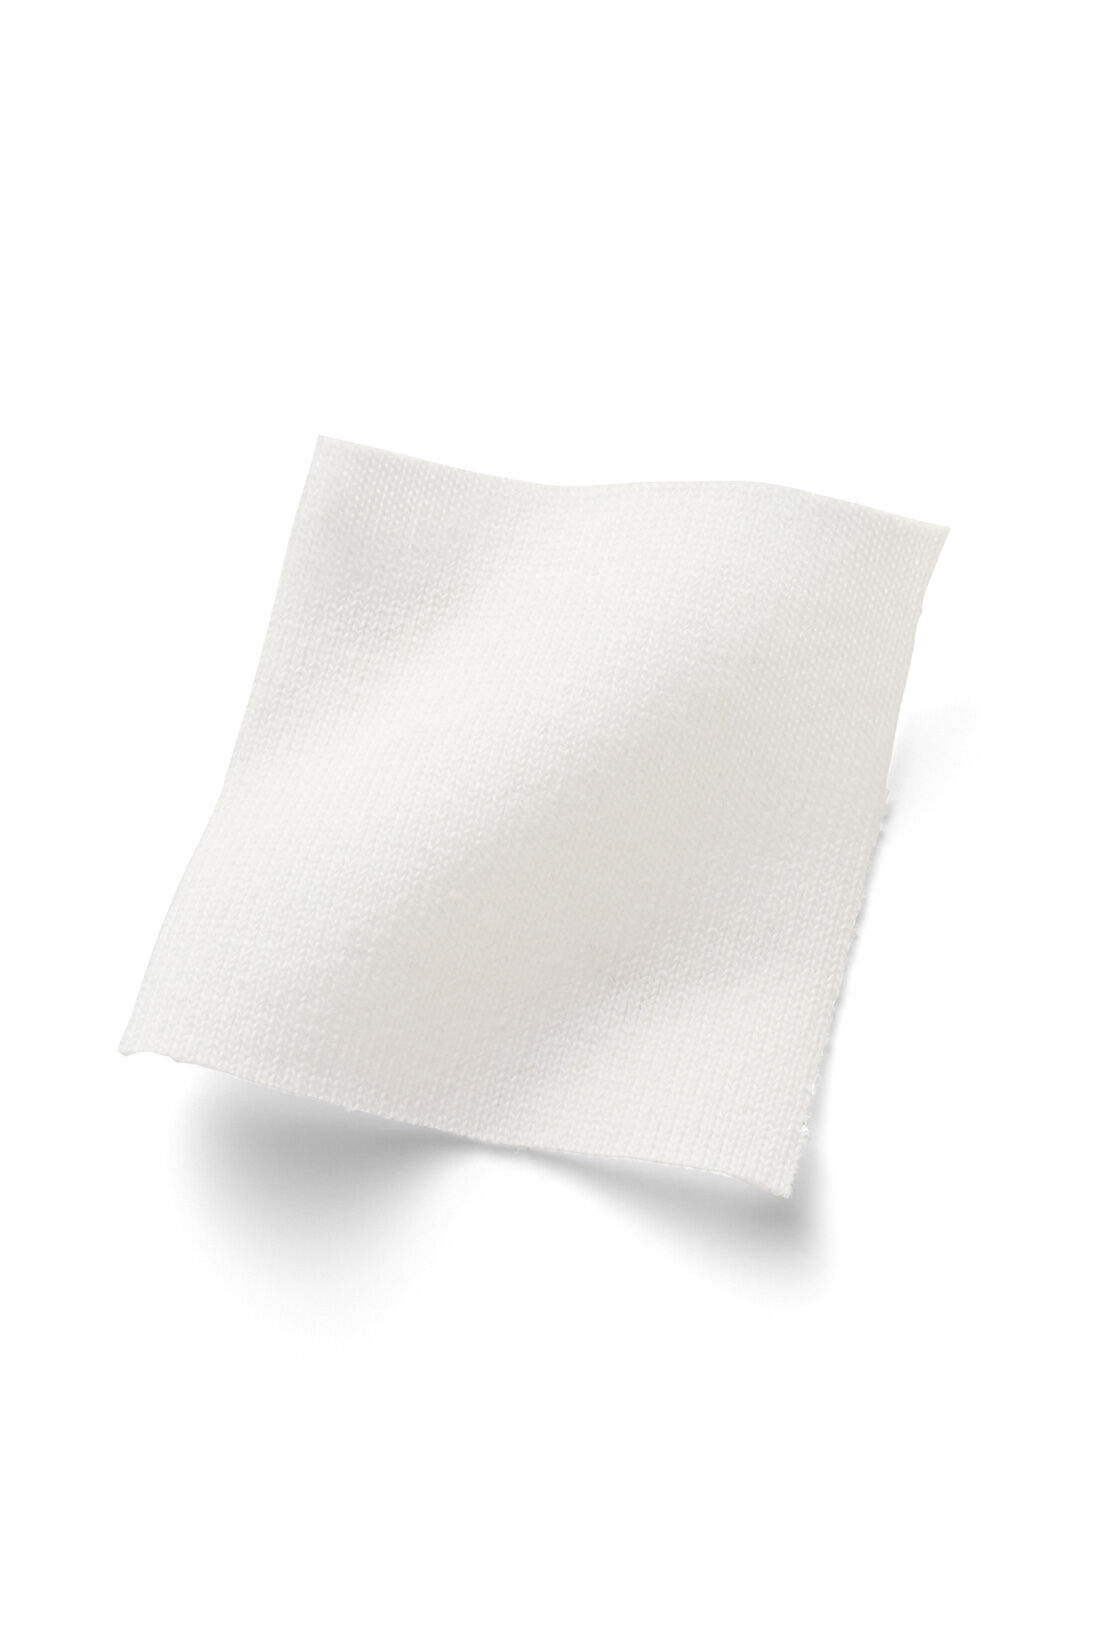 IEDIT|IEDIT[イディット]　福田麻琴さんコラボ　大人が一枚で着こなしやすいロングＴシャツ〈オフホワイト〉|ドライタッチで、適度な張り感と厚みのある綿混カットソー素材。